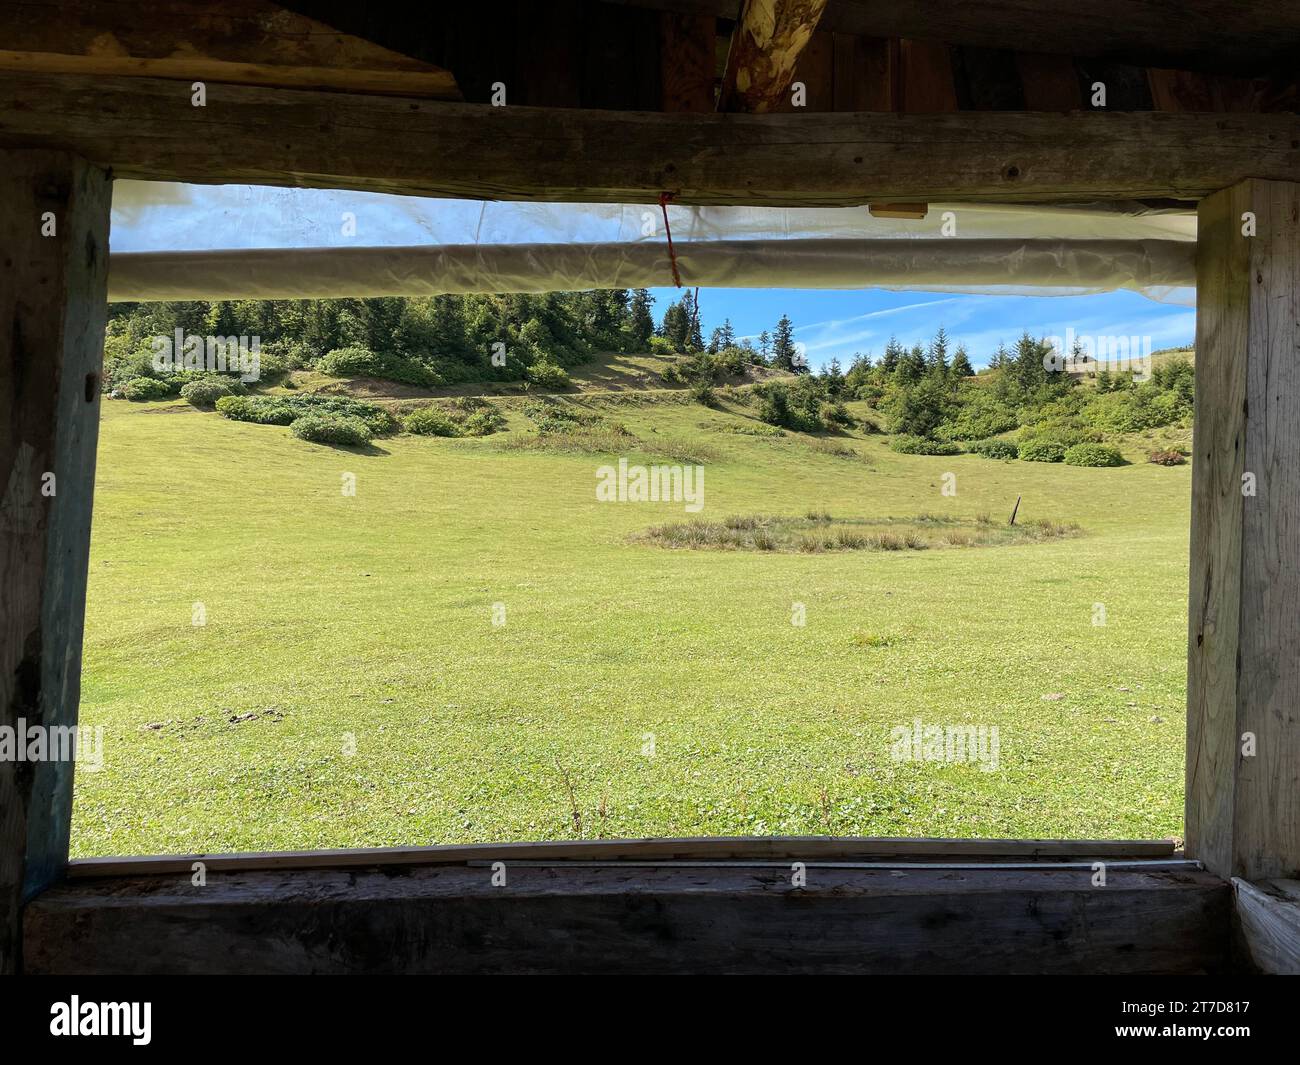 Une vue panoramique d'une fenêtre de cabine en bois donnant sur un paysage rural verdoyant par une journée ensoleillée Banque D'Images